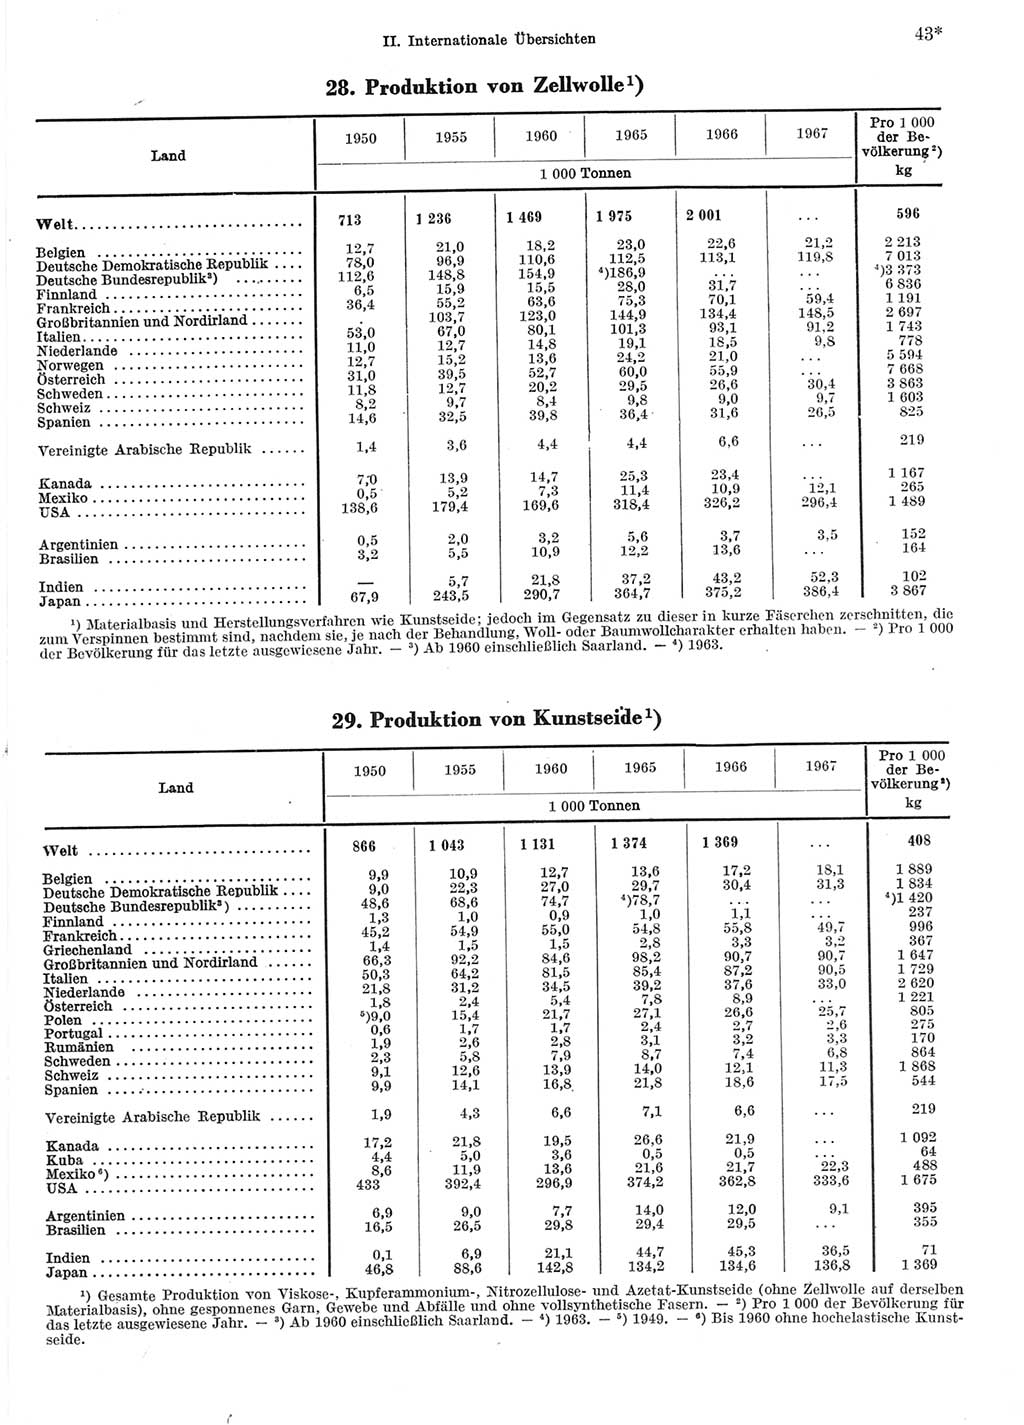 Statistisches Jahrbuch der Deutschen Demokratischen Republik (DDR) 1969, Seite 43 (Stat. Jb. DDR 1969, S. 43)